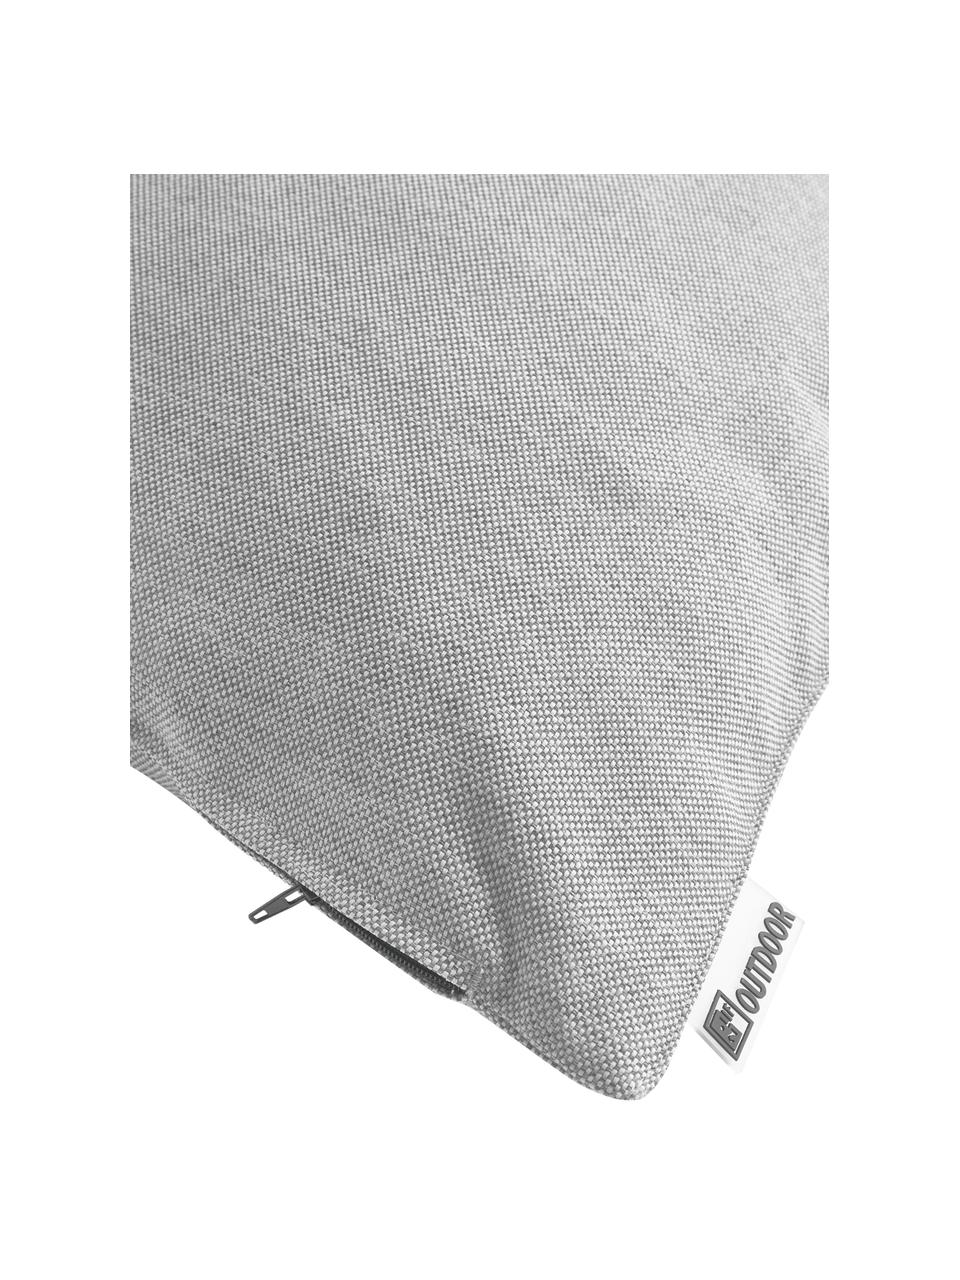 Zewnętrzna poduszka Olef, 100% bawełna, Jasny szary, S 45 x D 45 cm